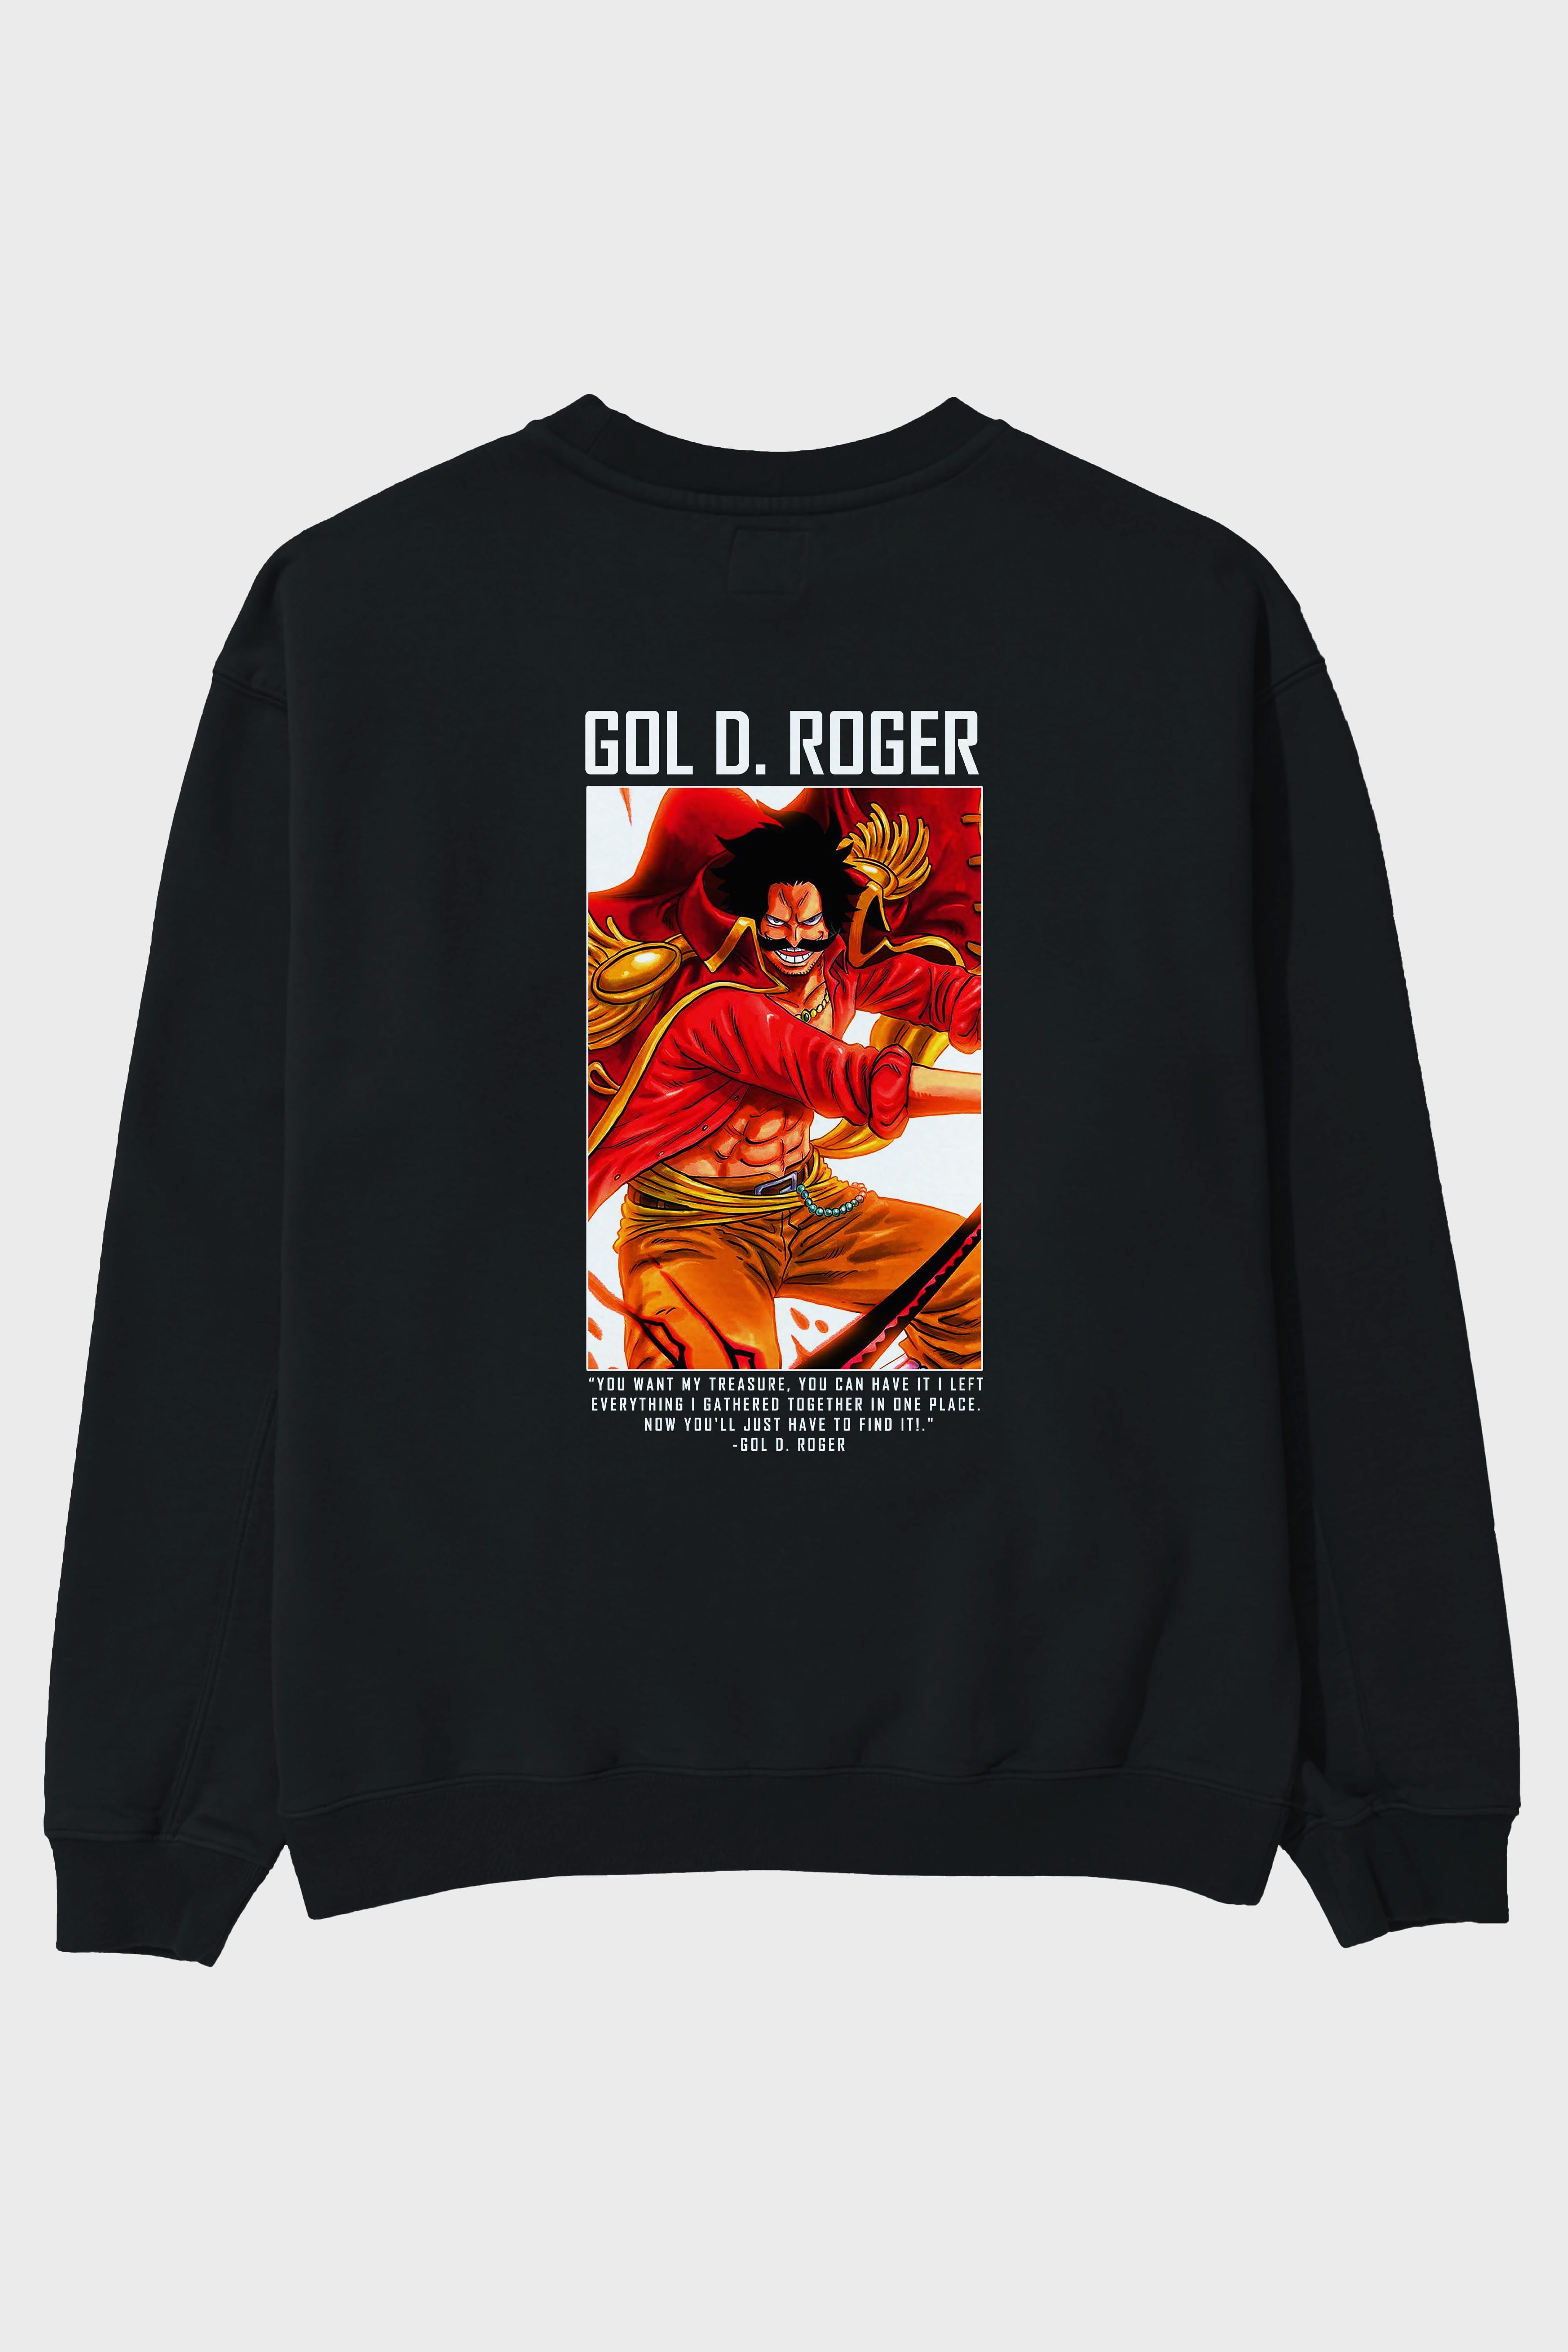 Gol D. Roger Arka Baskılı Anime Oversize Sweatshirt Erkek Kadın Unisex